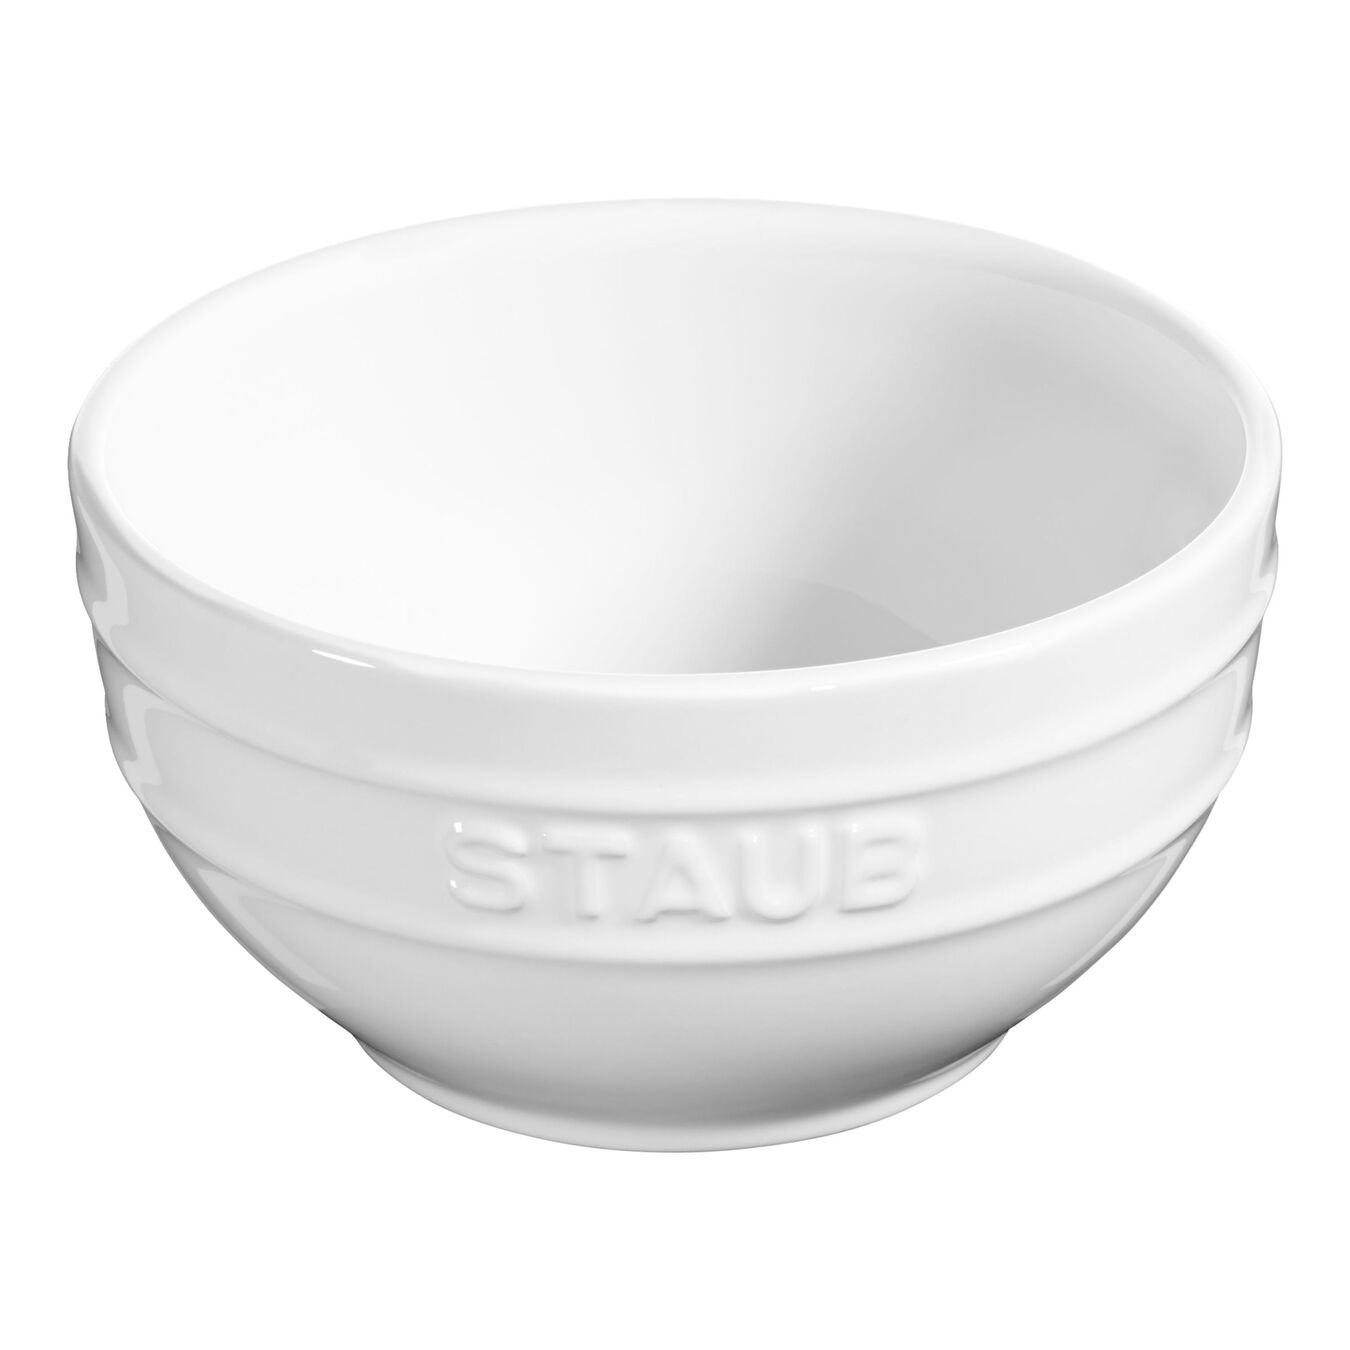 14 cm round Ceramic Bowl pure-white,,large 1